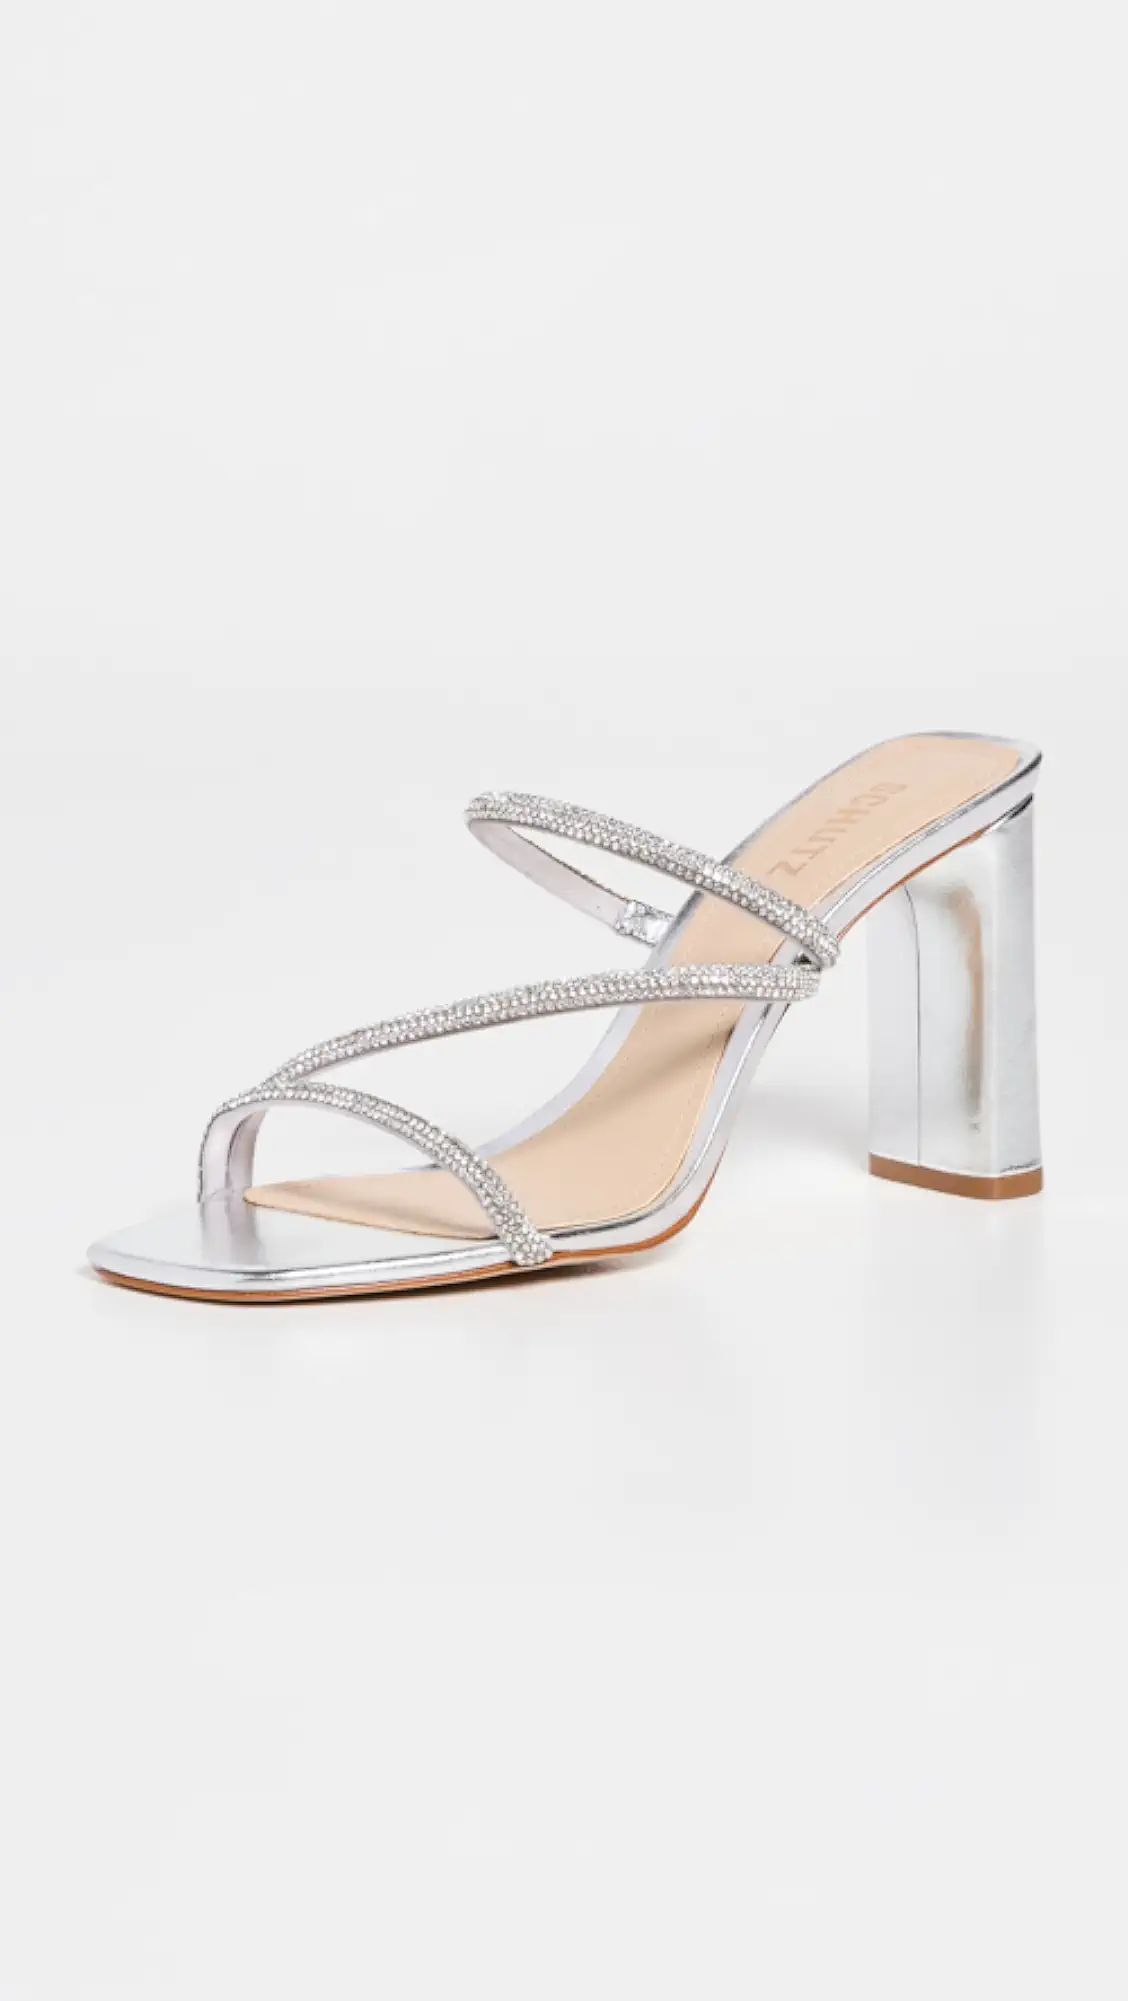 Chessie Bright Sandals | Shopbop